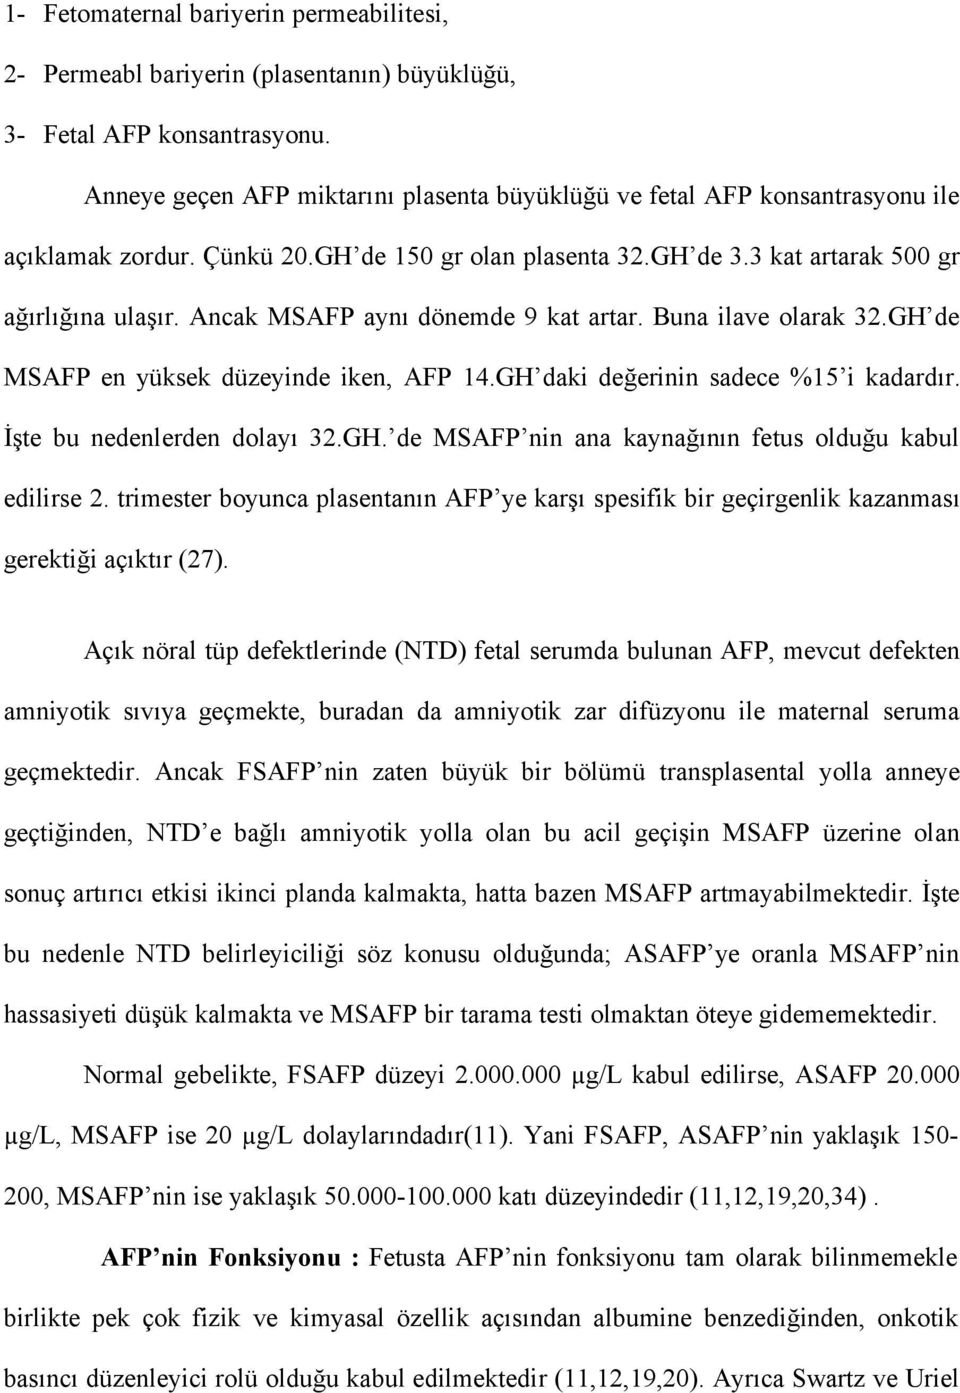 Ancak MSAFP aynı dönemde 9 kat artar. Buna ilave olarak 32.GH de MSAFP en yüksek düzeyinde iken, AFP 14.GH daki değerinin sadece %15 i kadardır. İşte bu nedenlerden dolayı 32.GH. de MSAFP nin ana kaynağının fetus olduğu kabul edilirse 2.